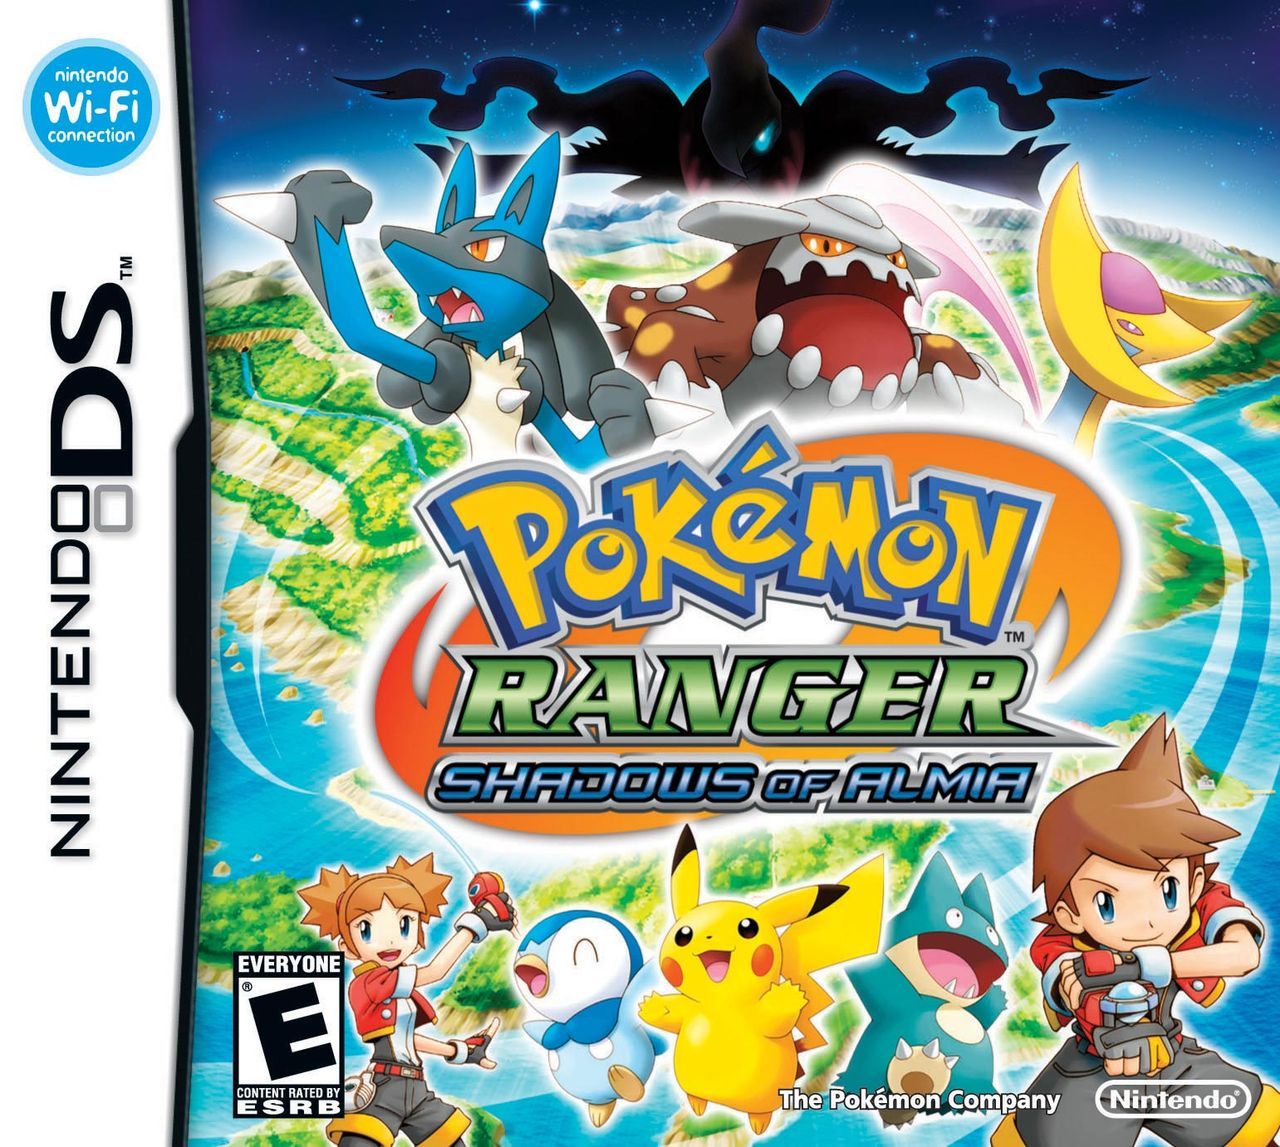 Llorar Estribillo frecuentemente Pokémon Ranger: Sombras de Almia - Videojuego (NDS y Wii U) - Vandal